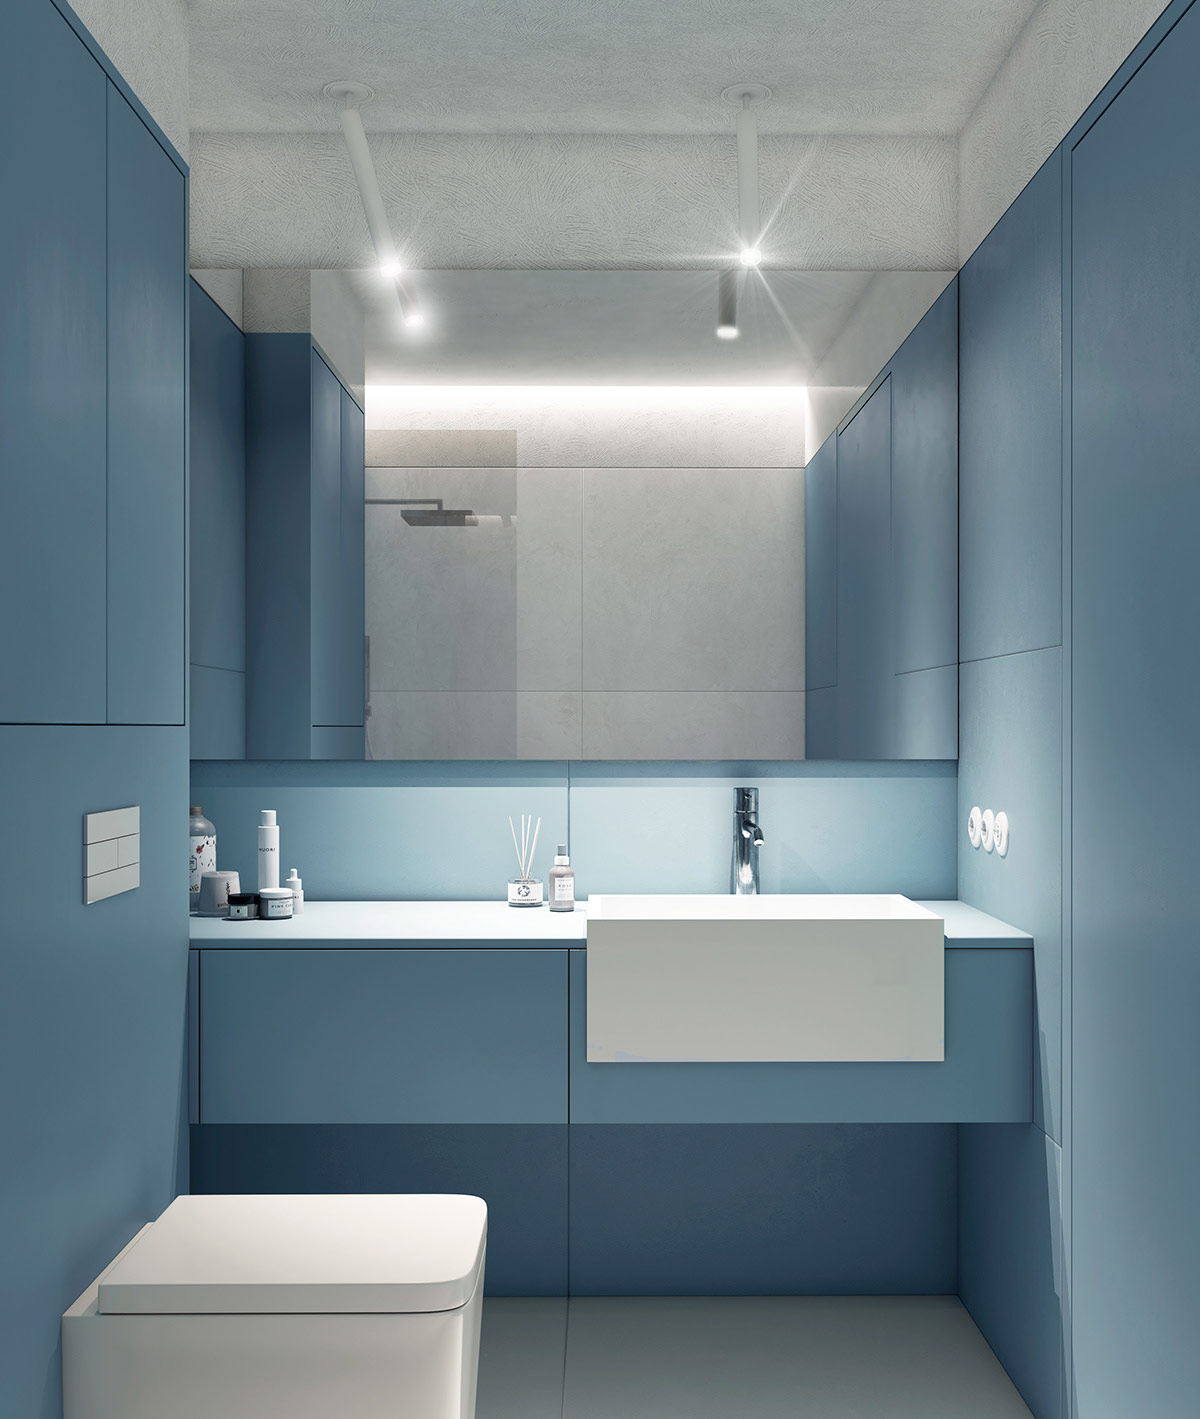 Chủ đề màu xanh lam tuyệt đẹp trở lại bên trong phòng tắm nhỏ, với những bức tường màu xanh lam kiên cố và tủ đồ.